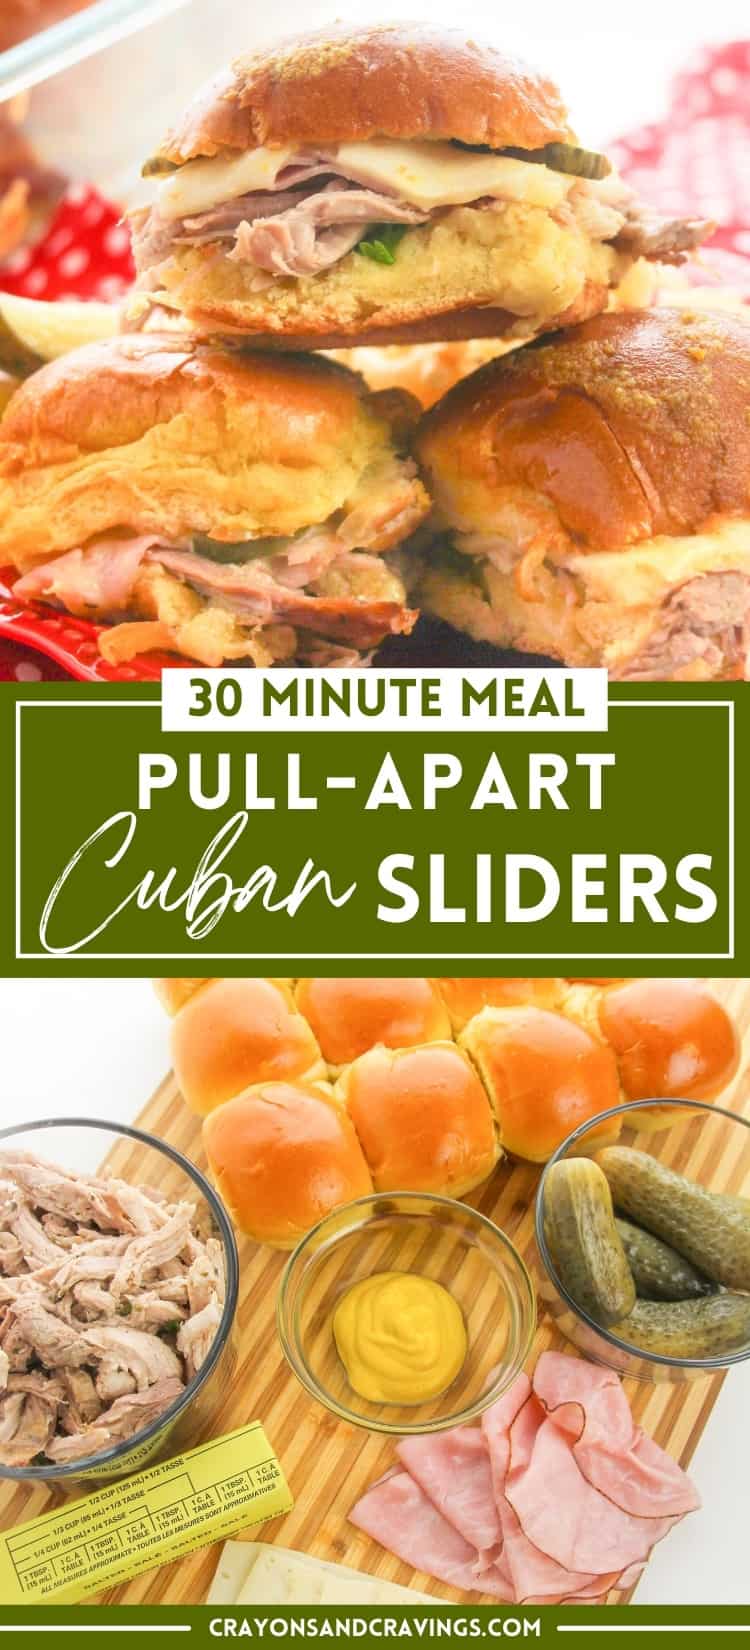 30 Minute Pull-Apart Cuban Sliders